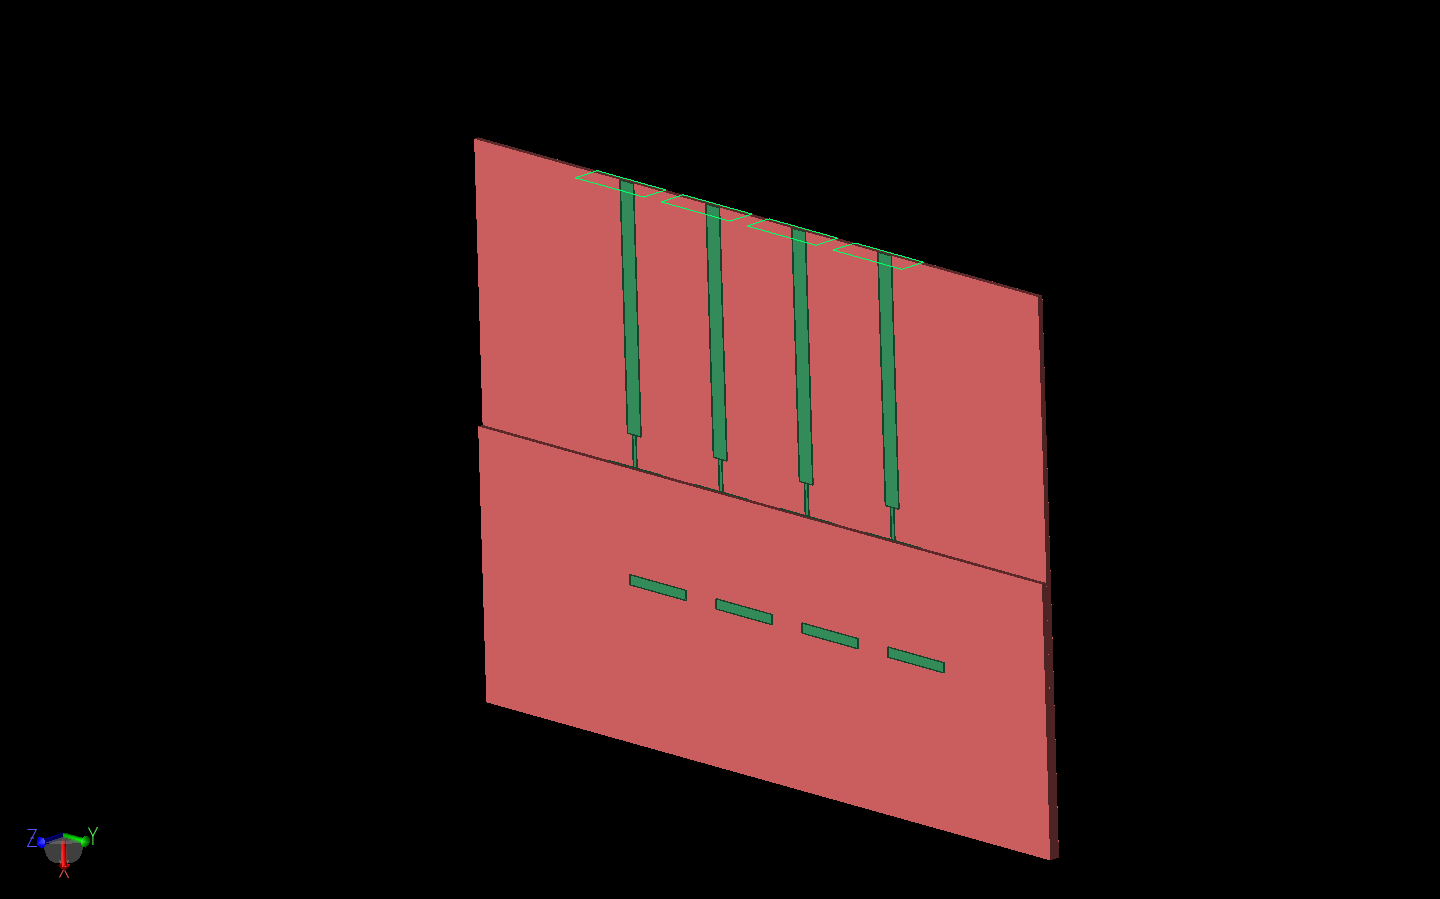 Abbildung 2: Das Antennen-Array ist dreidimensional dargestellt, wobei der Rand der oberen Substratschicht über den Patches besser sichtbar ist. Die vier nodalen Hohlleiteranschlüsse sind auf der Oberseite des Arrays sichtbar.